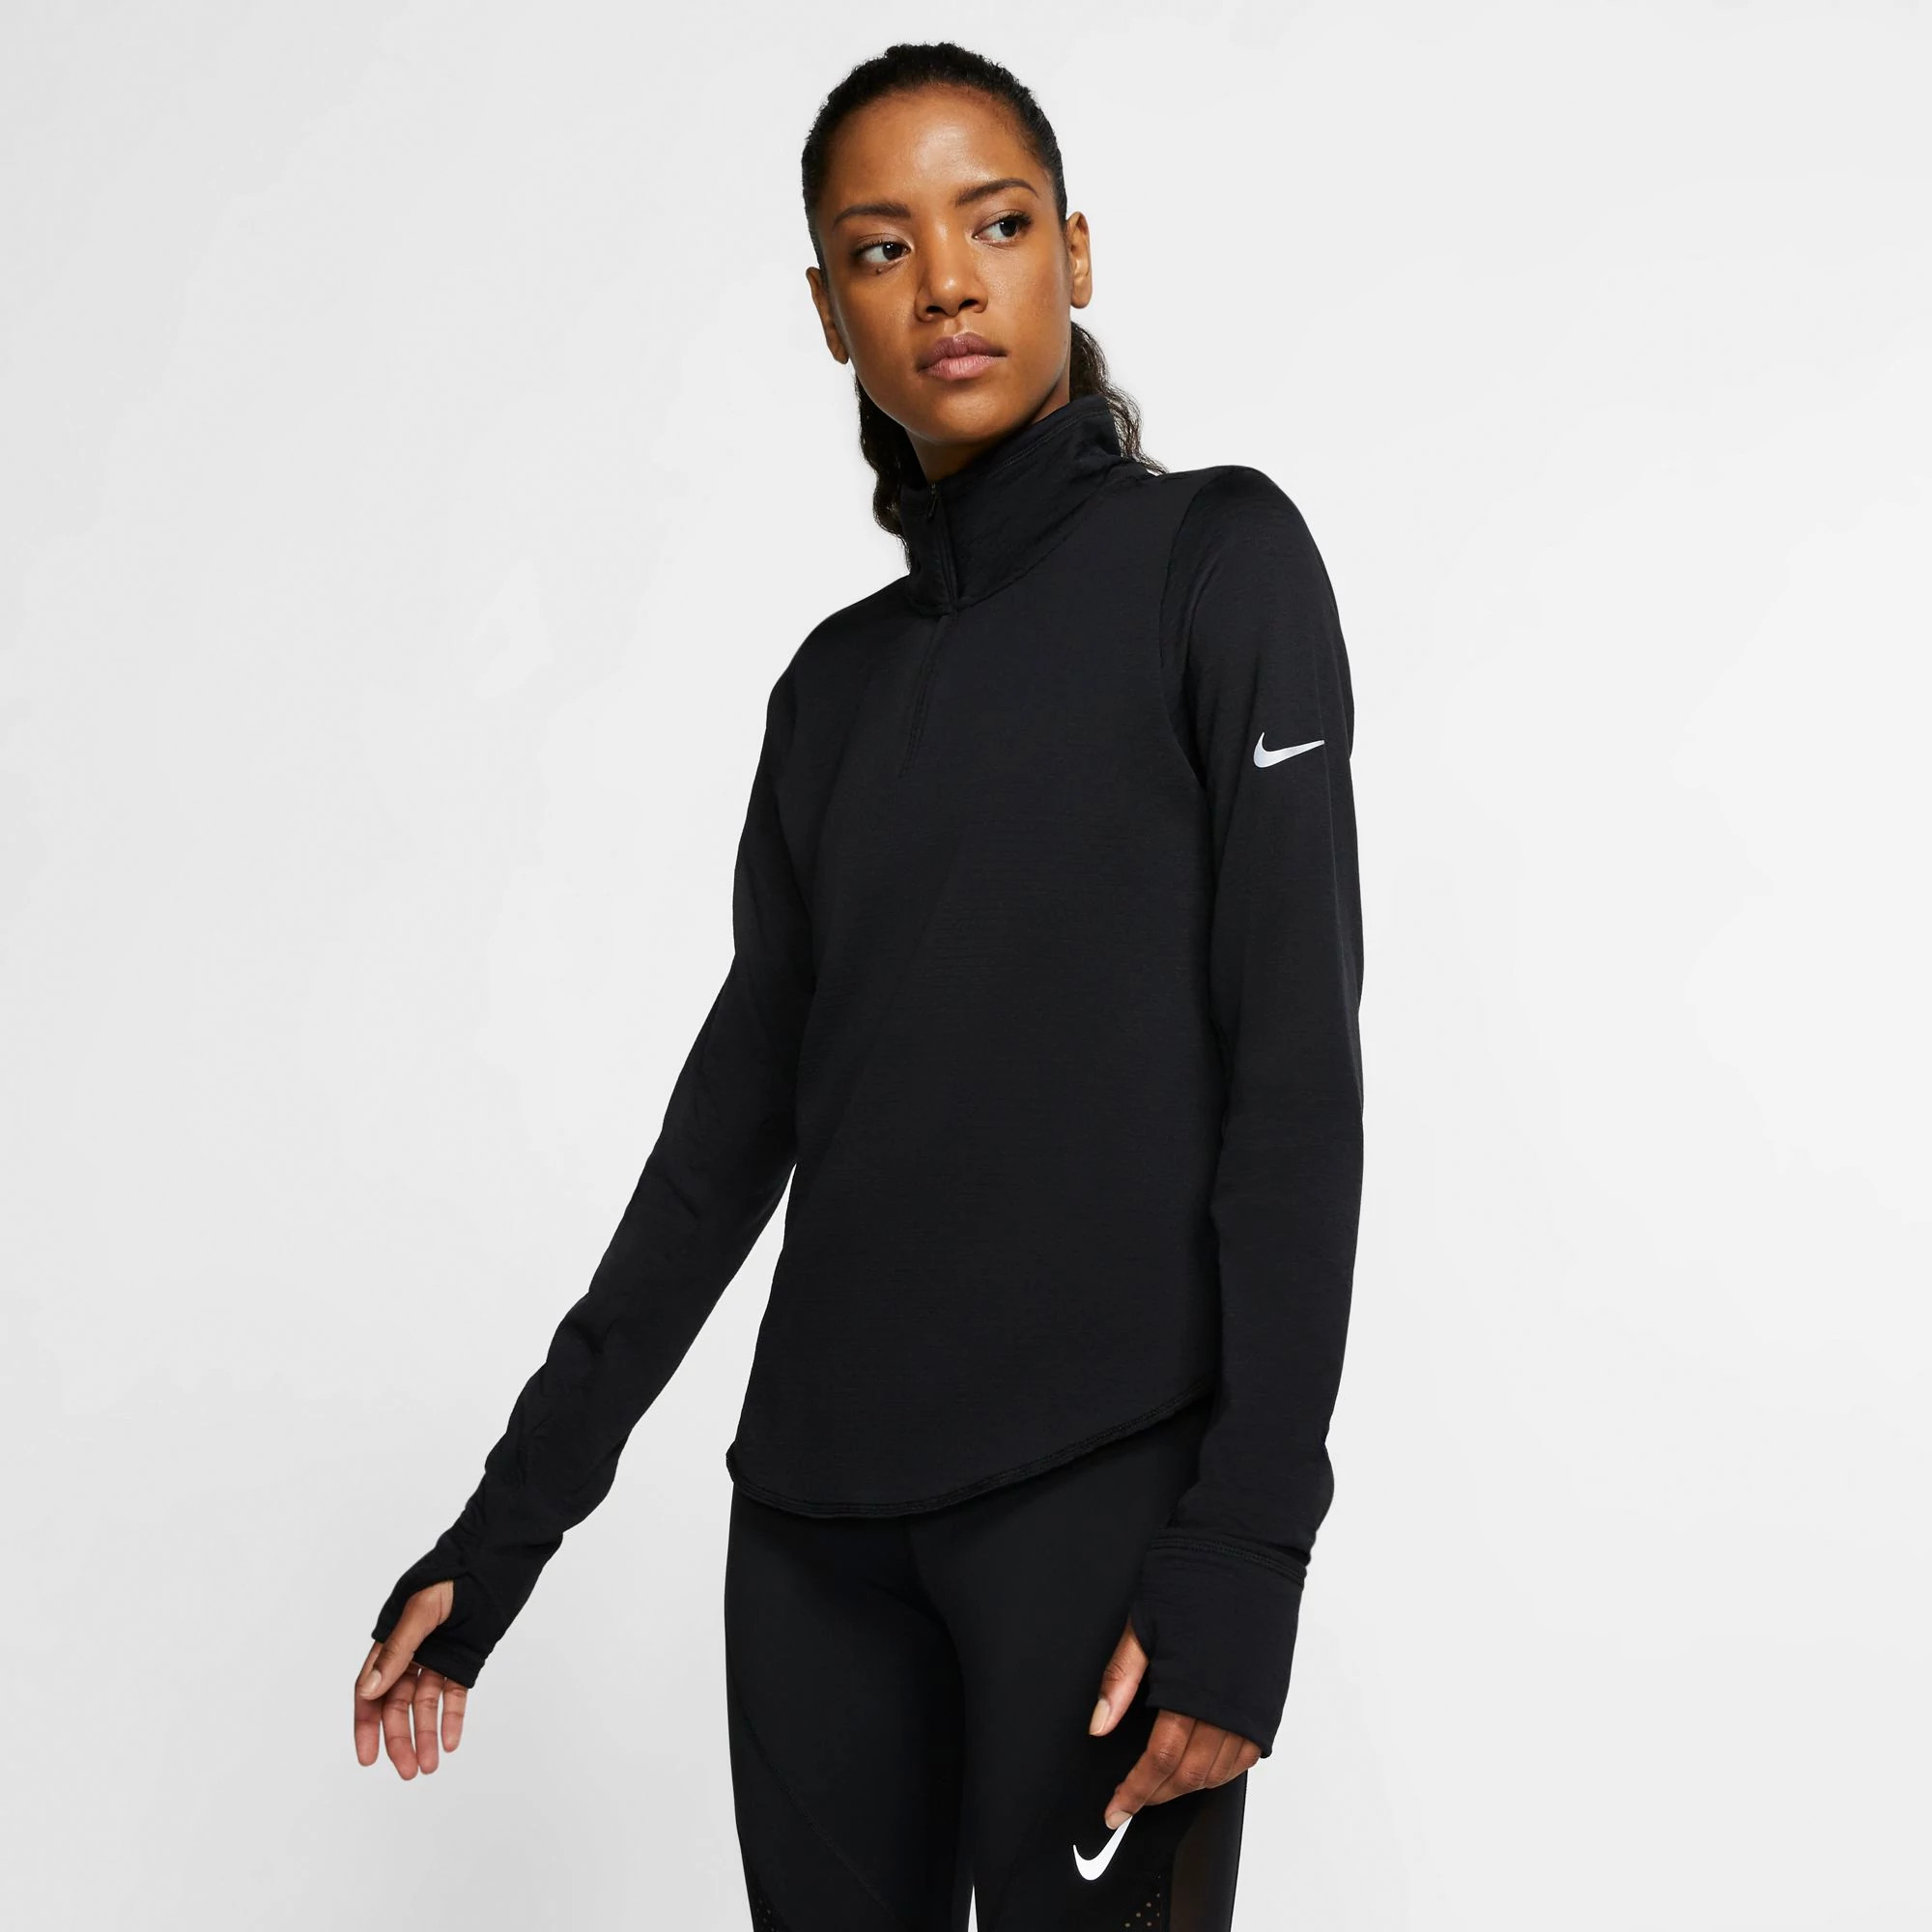 Verbeteren markering kraan Womens Nike Sphere Element Half Zip Half-Zips & Hoodies Technical Tops